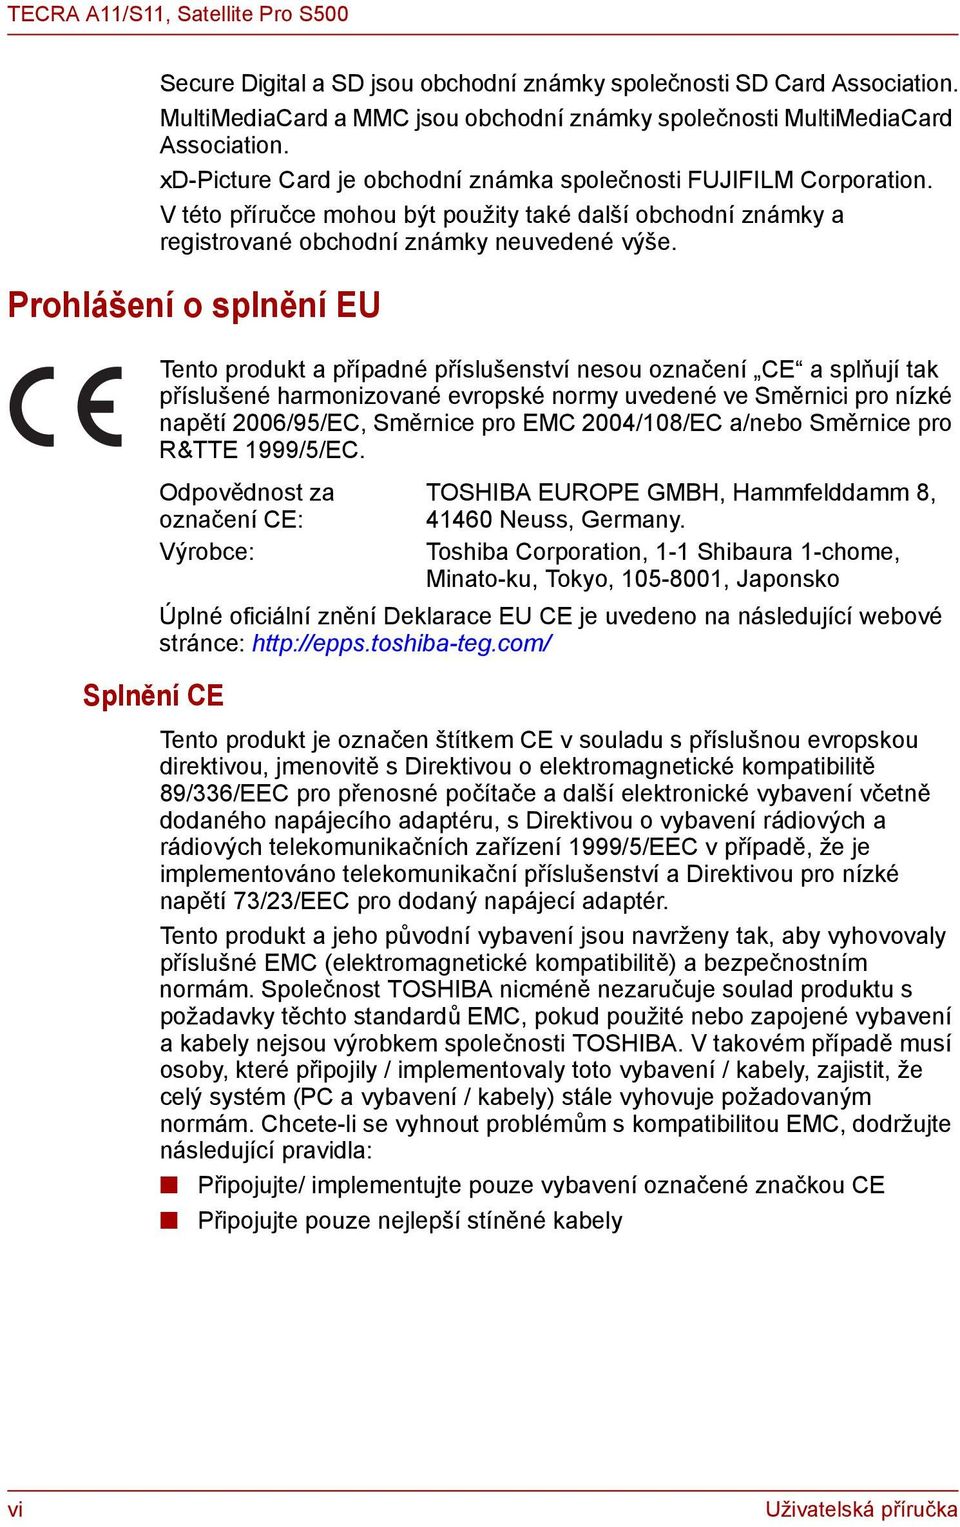 Prohlášení o splnění EU Splnění CE Tento produkt a případné příslušenství nesou označení CE a splňují tak příslušené harmonizované evropské normy uvedené ve Směrnici pro nízké napětí 2006/95/EC,